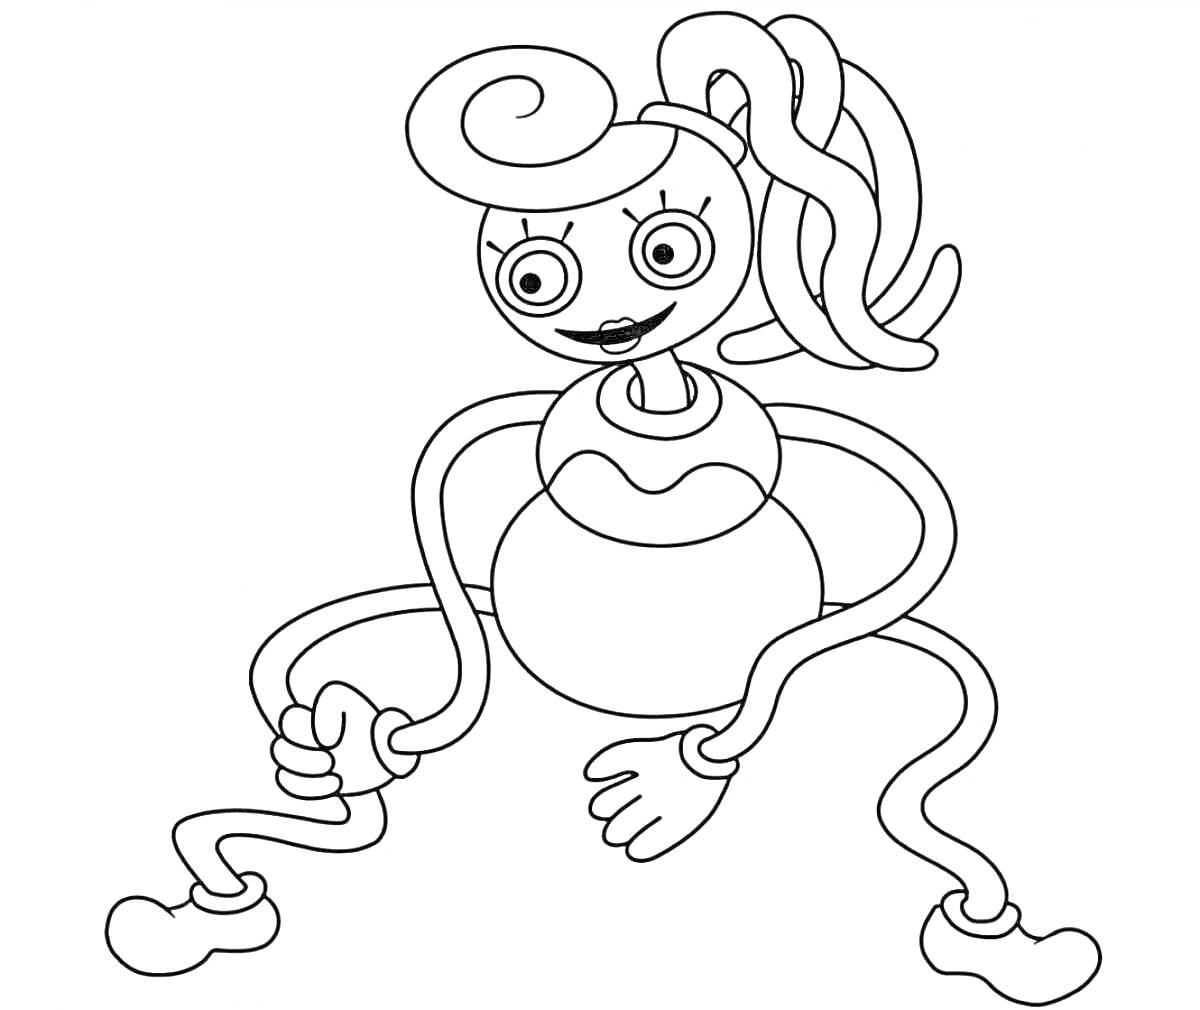 Раскраска Мама с длинными ногами и руками, волосы собраны в высокий хвост, закрученные волосы, крупные круги на глазах, нарисована в мультяшном стиле